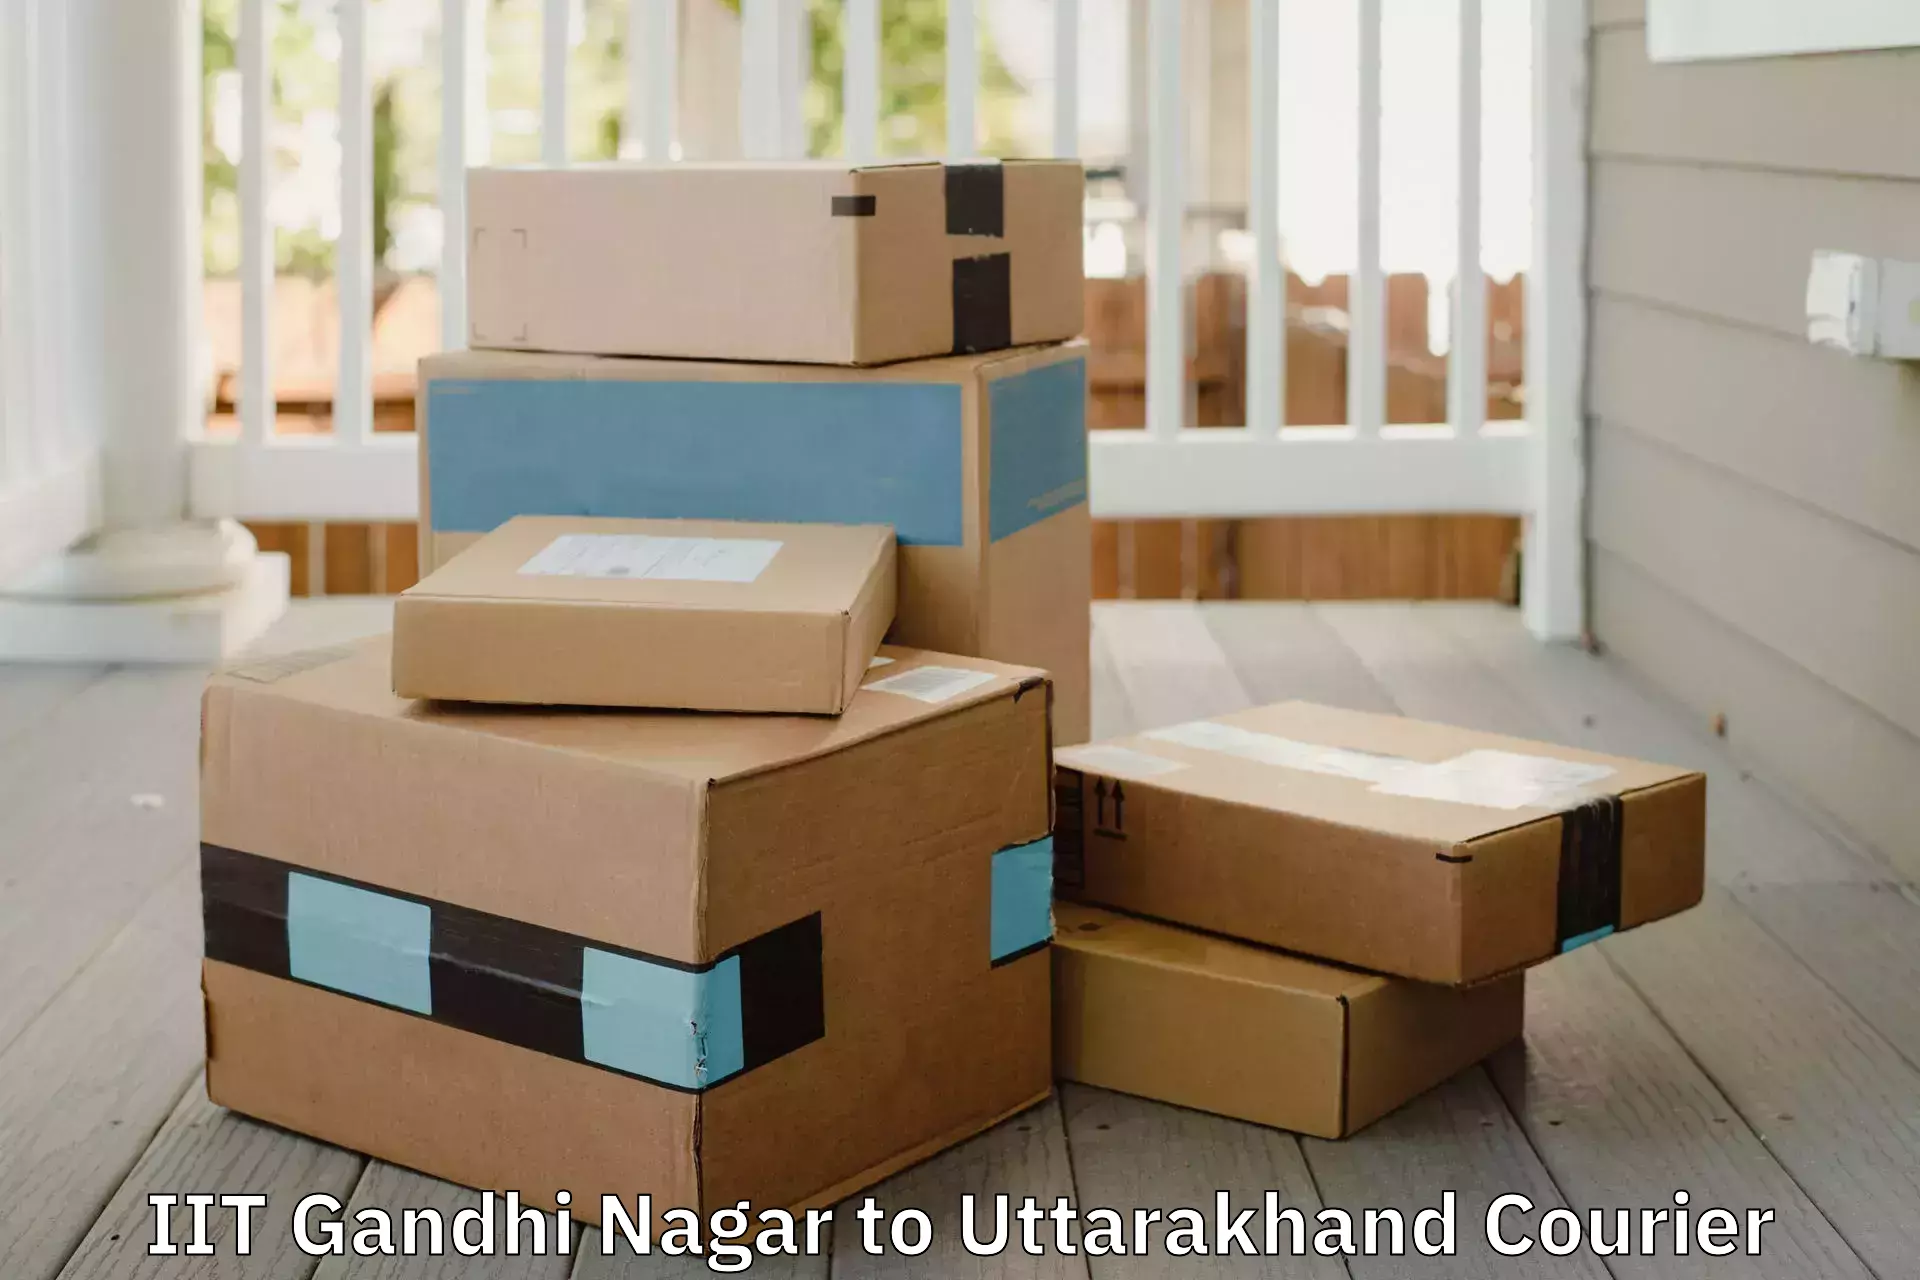 Efficient furniture movers IIT Gandhi Nagar to Paithani